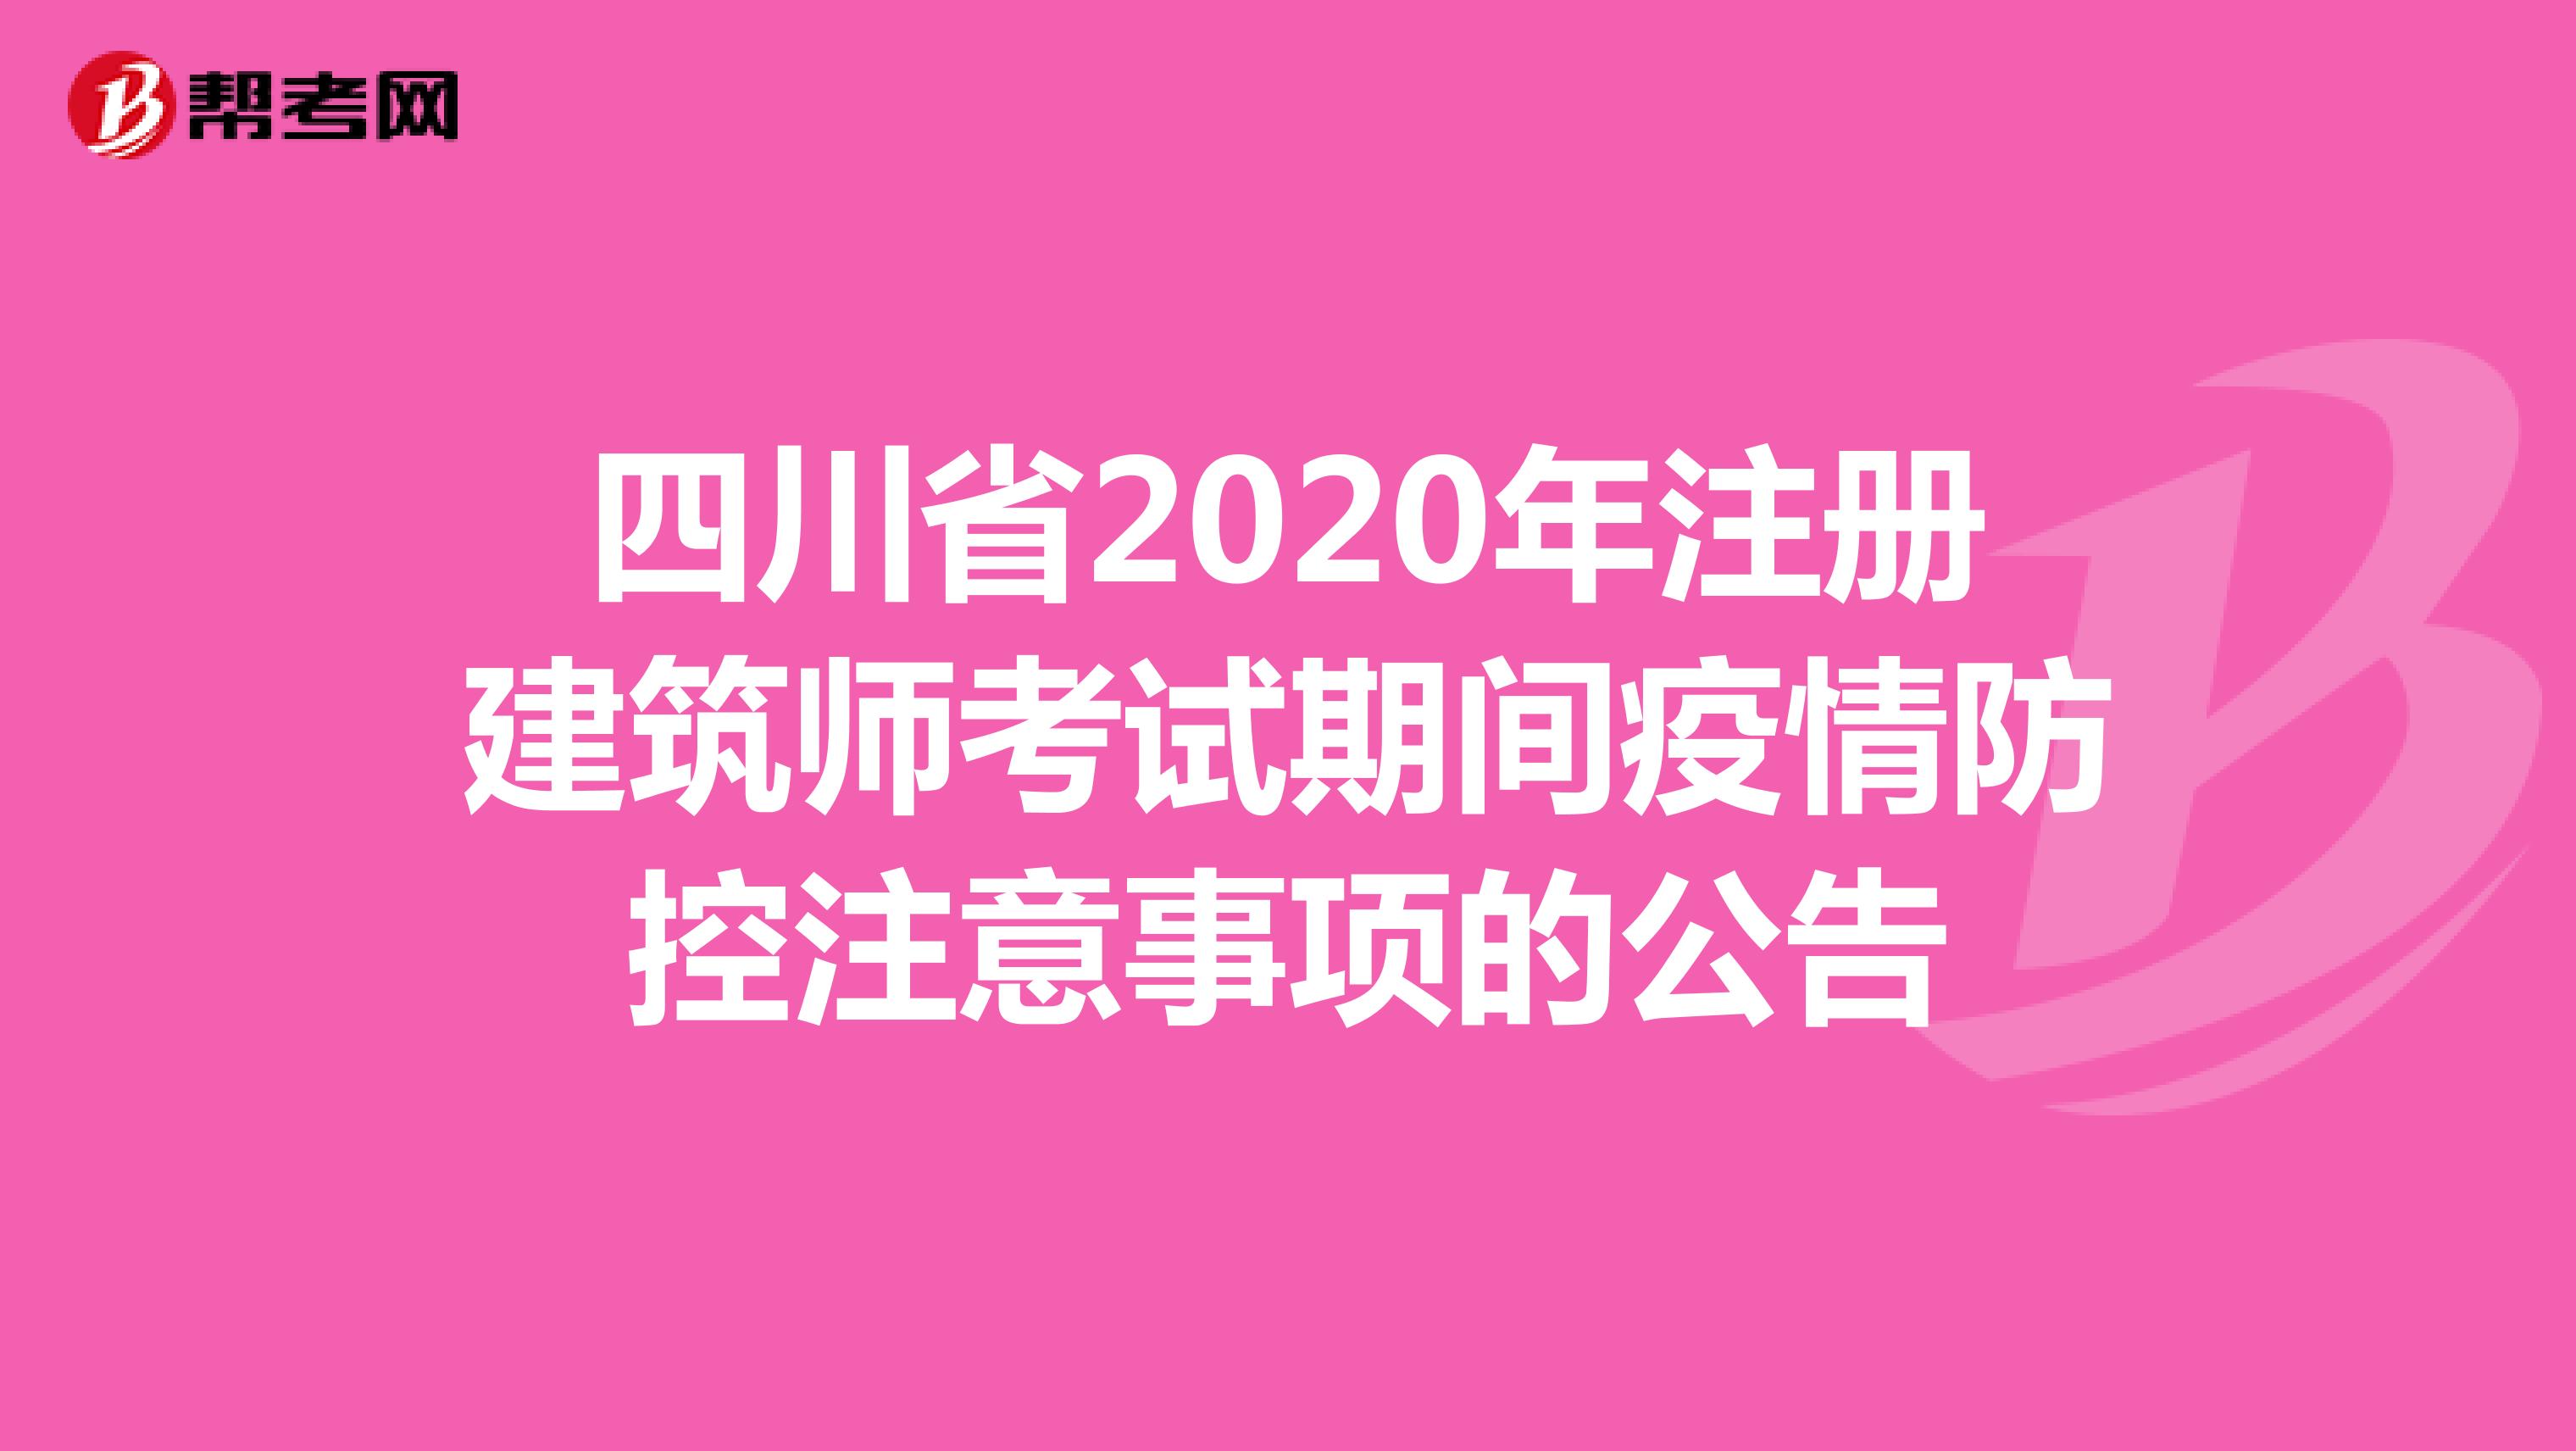 四川省2020年注册建筑师考试期间疫情防控注意事项的公告